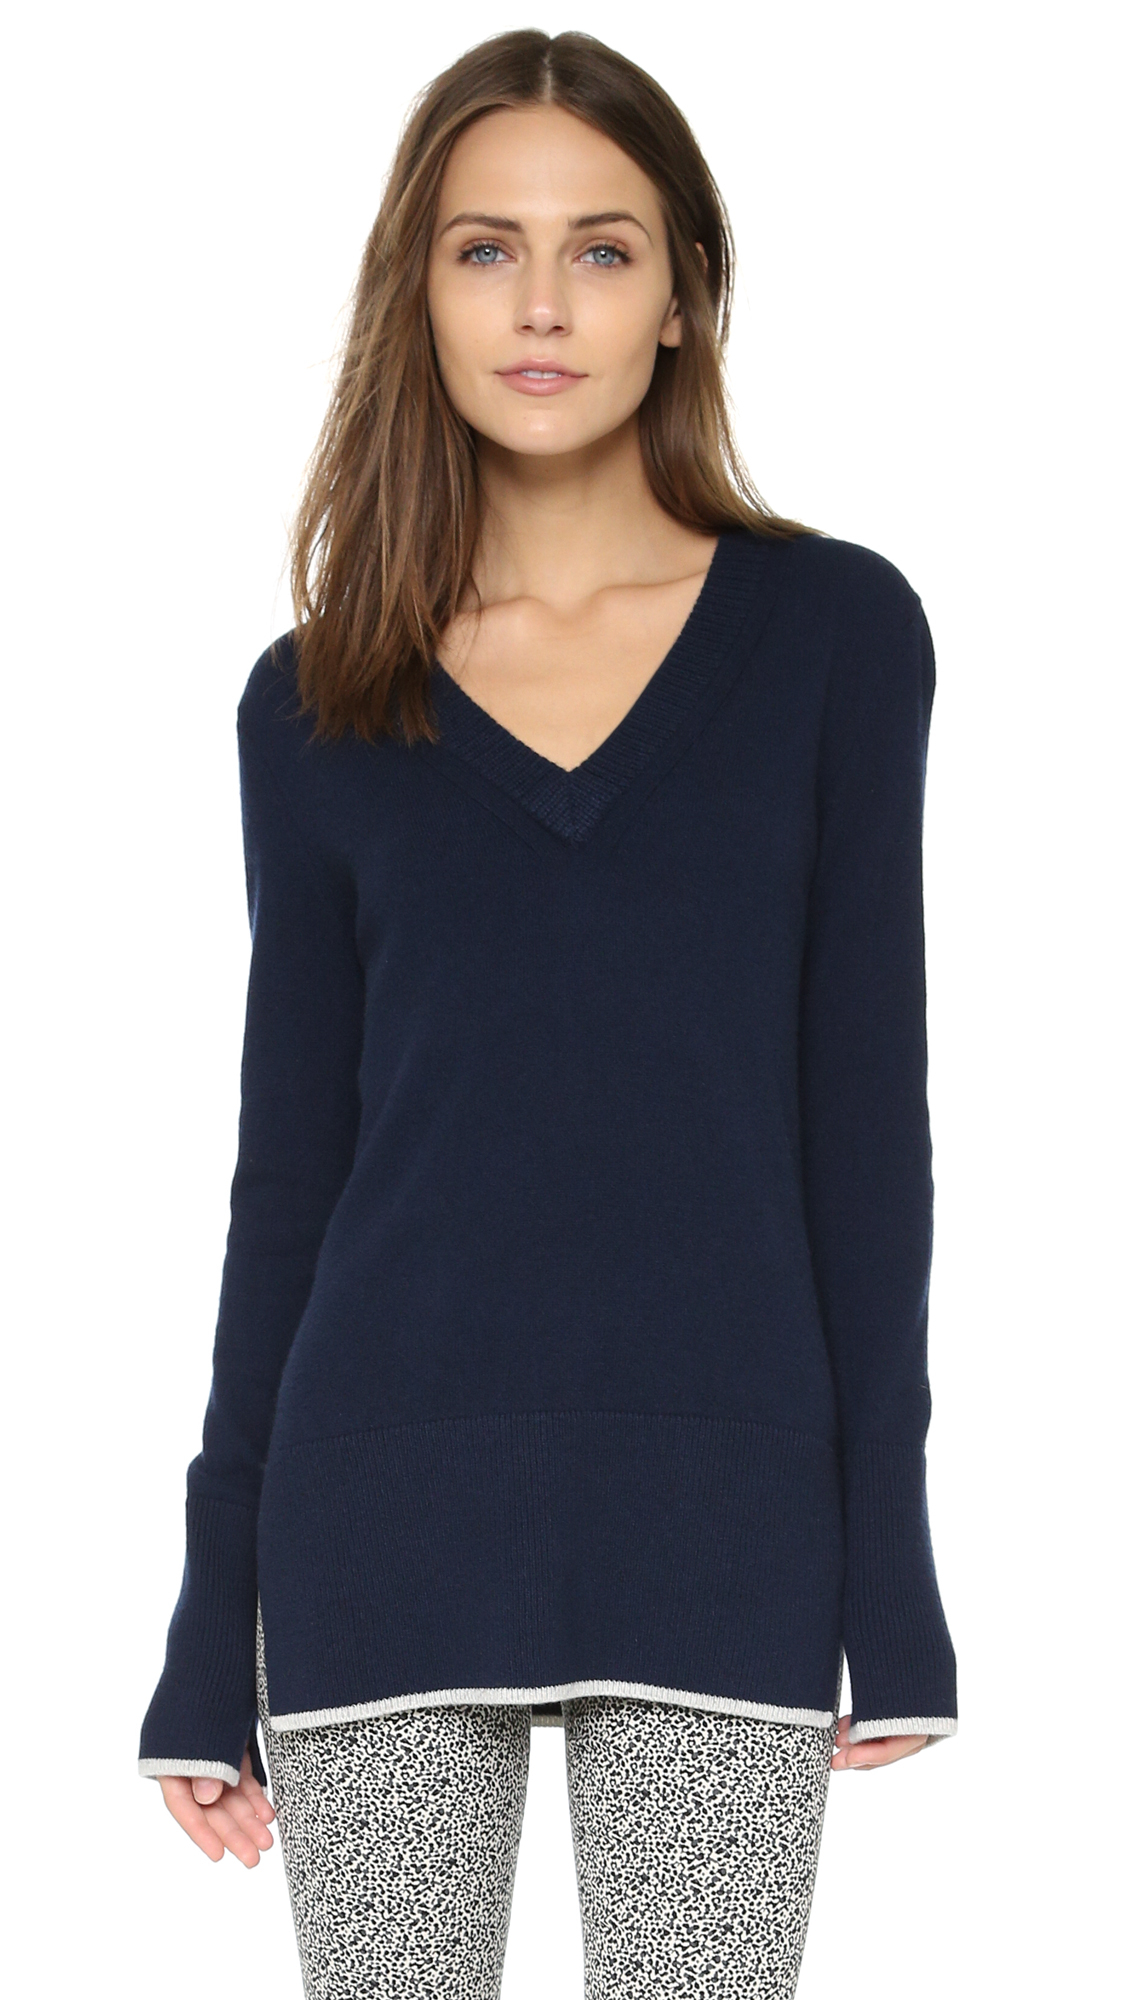 Rag & bone Flavia Cashmere V Neck Sweater in Blue | Lyst